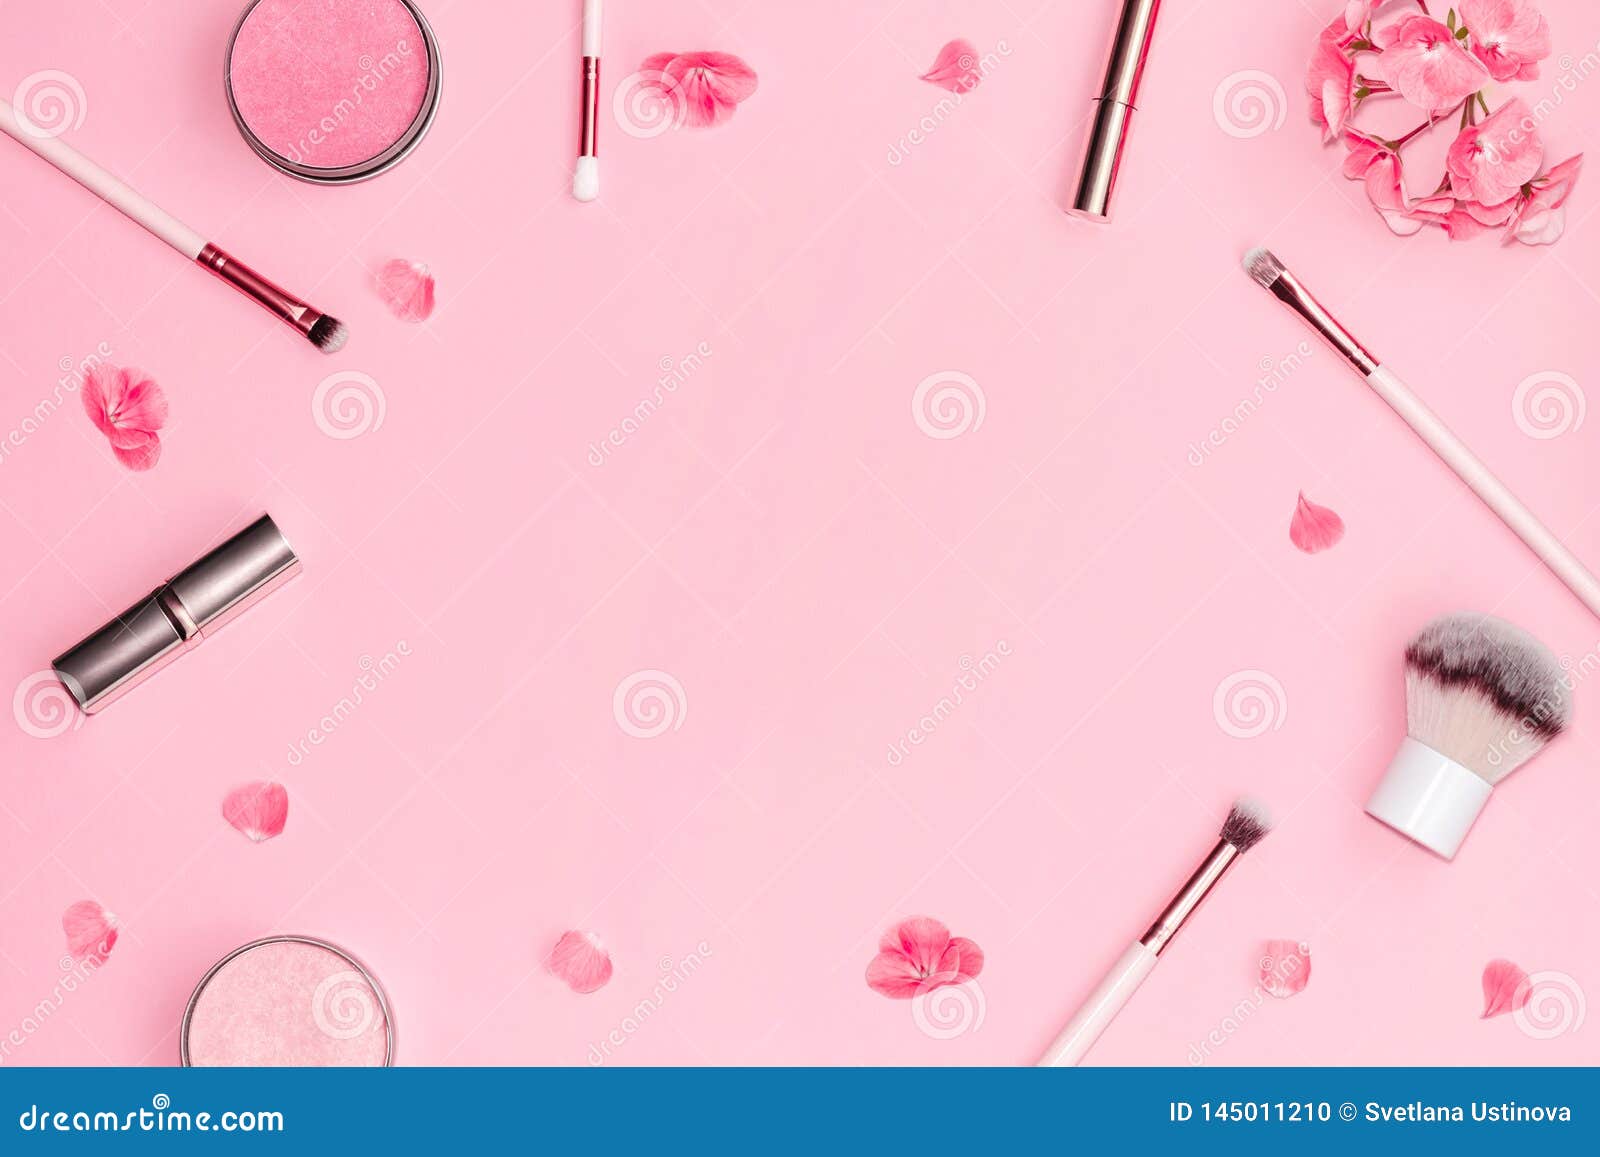 Sản phẩm trang điểm dekor và màu hồng sẽ giúp bạn tạo nên lớp trang điểm lôi cuốn và nổi bật. Với thiết kế độc đáo và chất liệu cao cấp, sản phẩm sẽ là sự lựa chọn hoàn hảo cho những cô nàng yêu thích làm đẹp.